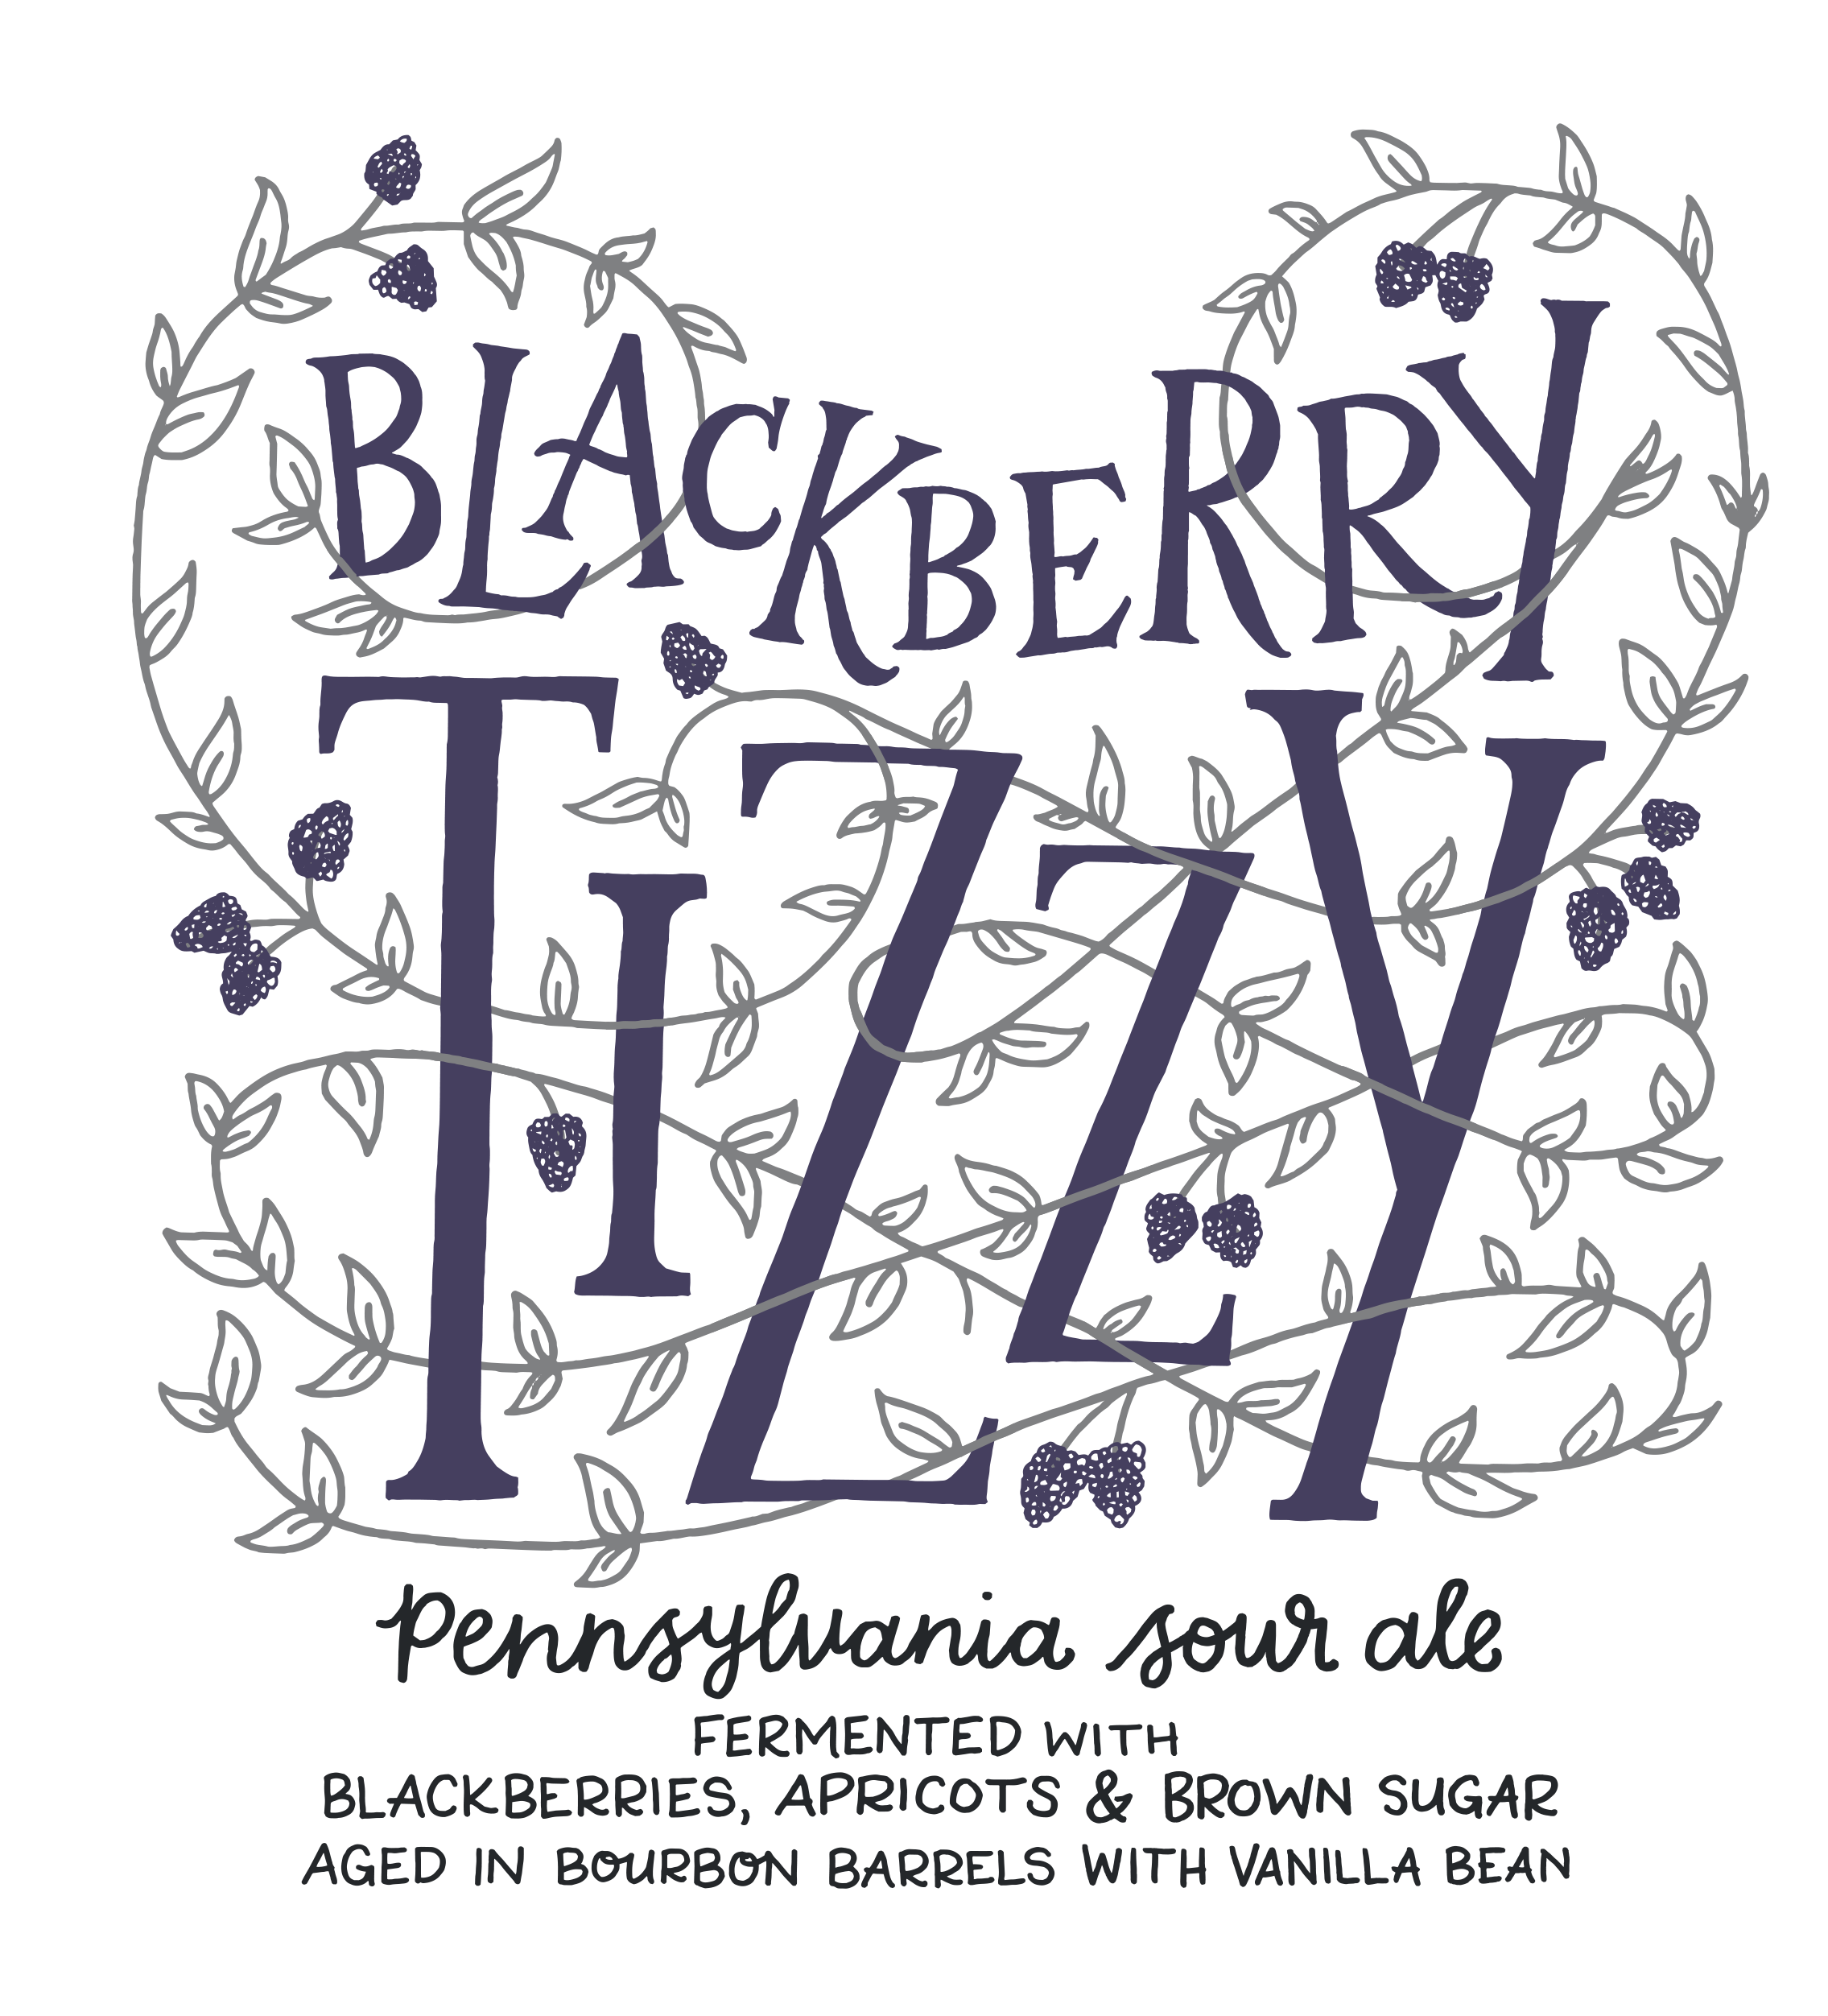 Blackberry Tizzy Release @ Tröegs Brewery